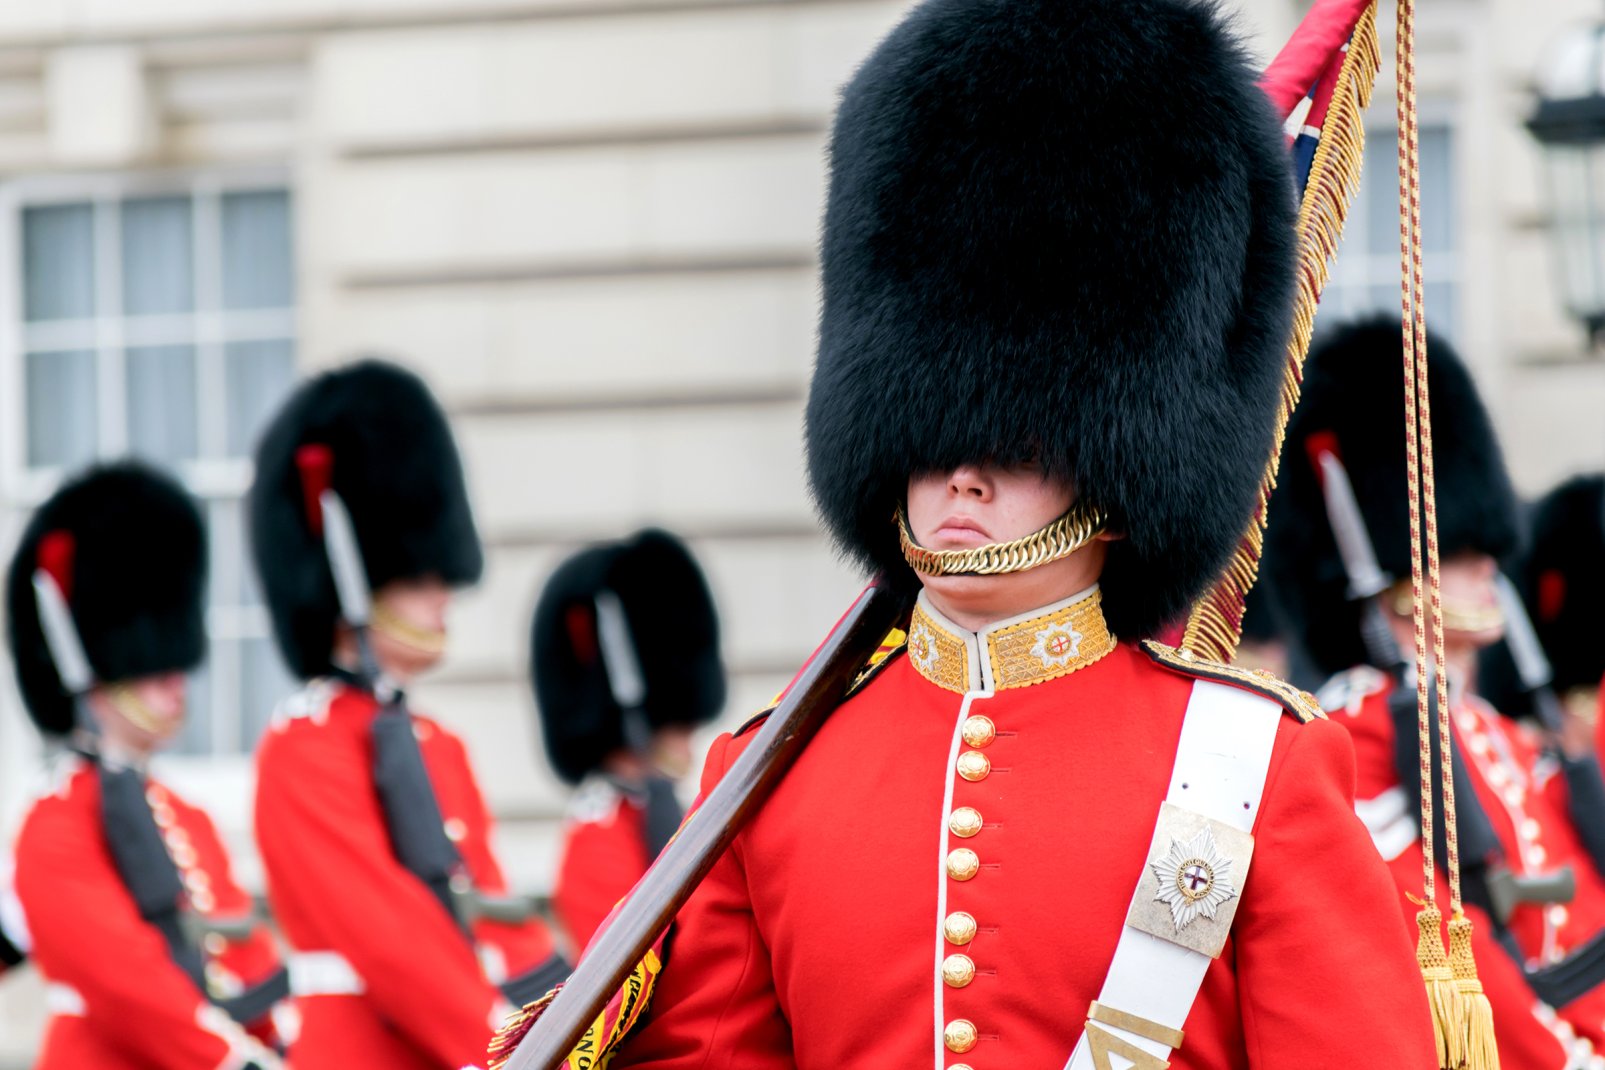 Cet uniforme typique composé d'une tunique rouge et d'un bonnet noir en poils d'ours est emprunté en 1831 à la garde impériale de Napoléon défaite à Waterloo, mais qui forçat l'admiration des Anglais. Aujourd'hui, il est question de remplacer les poils d'ours par du synthétique.